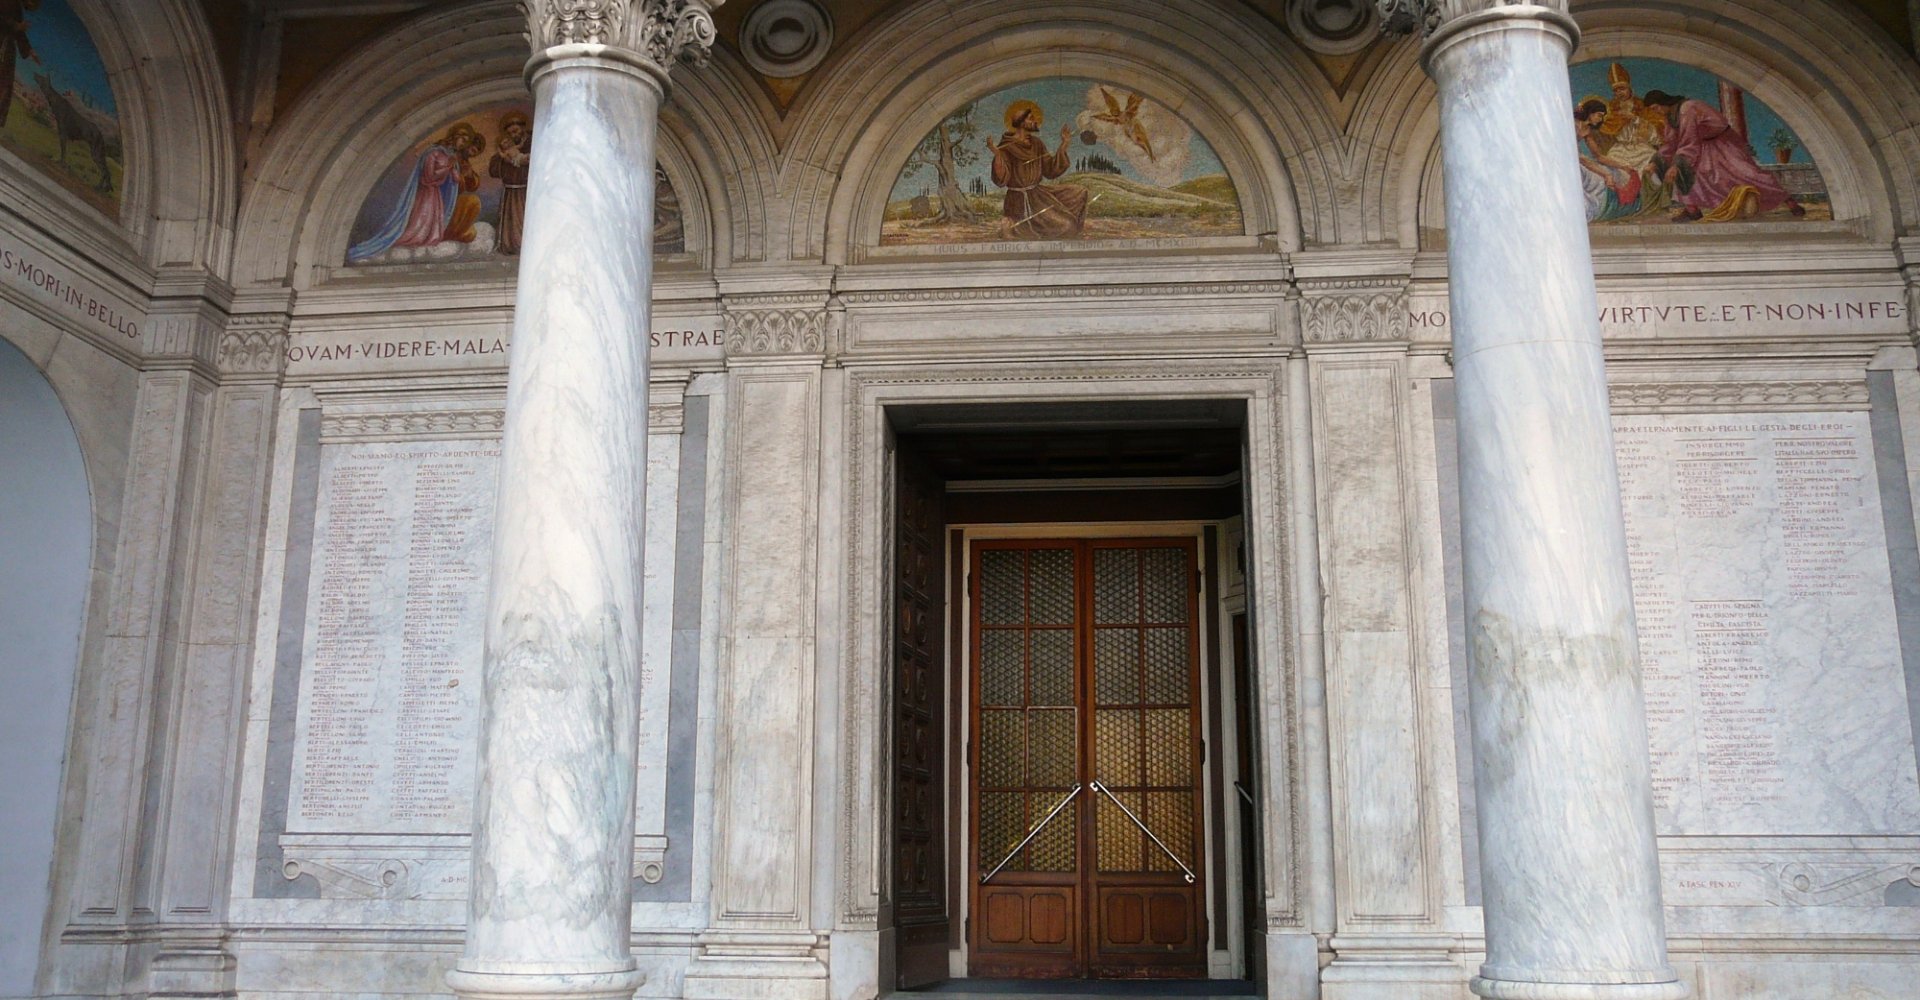 Dettagli della facciata del Duomo di Massa